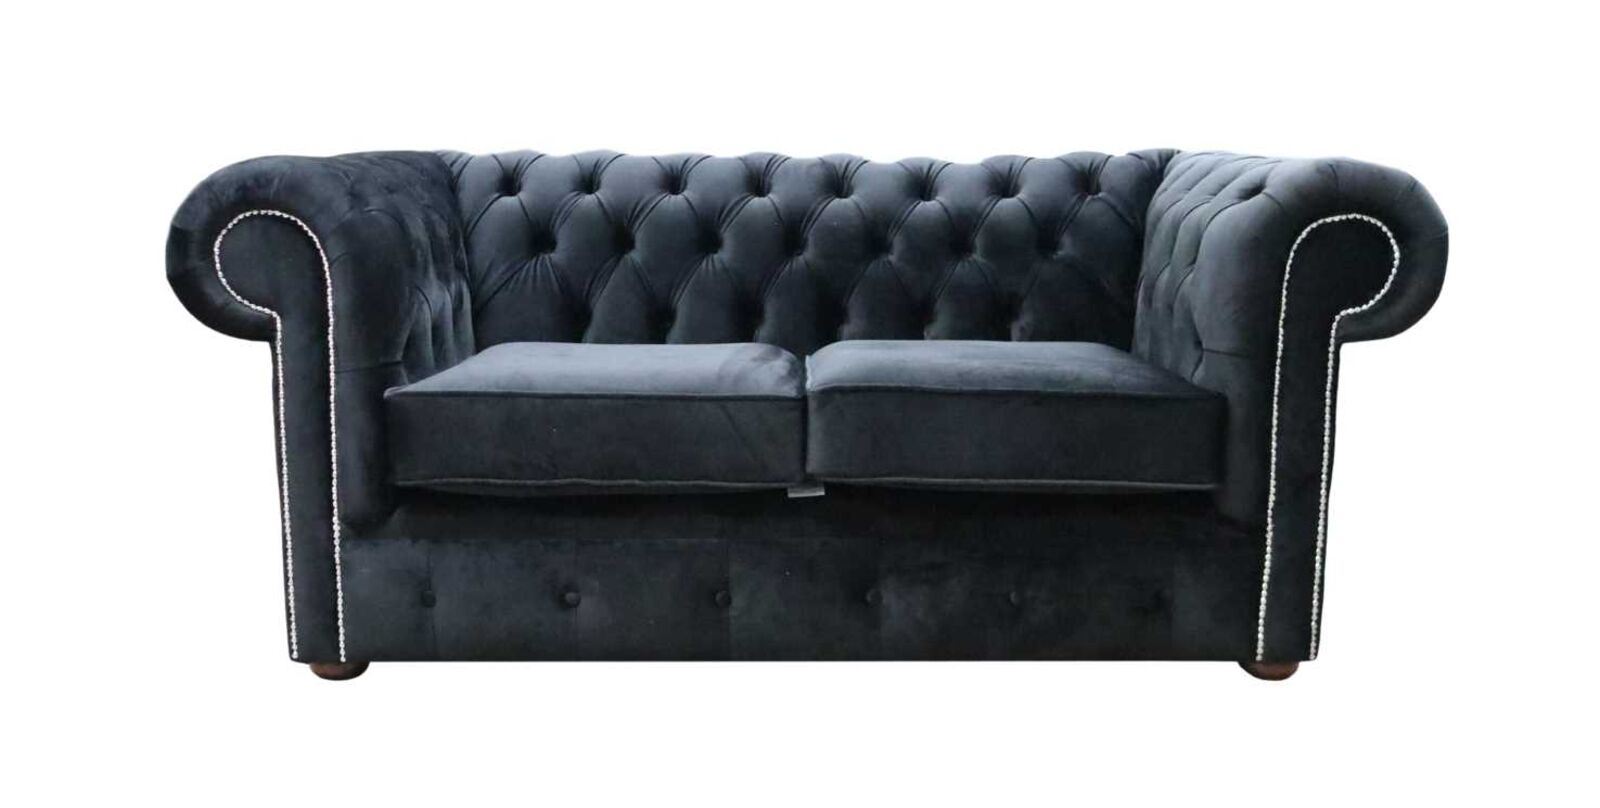 Product photograph of Chesterfield 2 Seater Settee Monaco Black Velvet Sofa Offer from Designer Sofas 4U